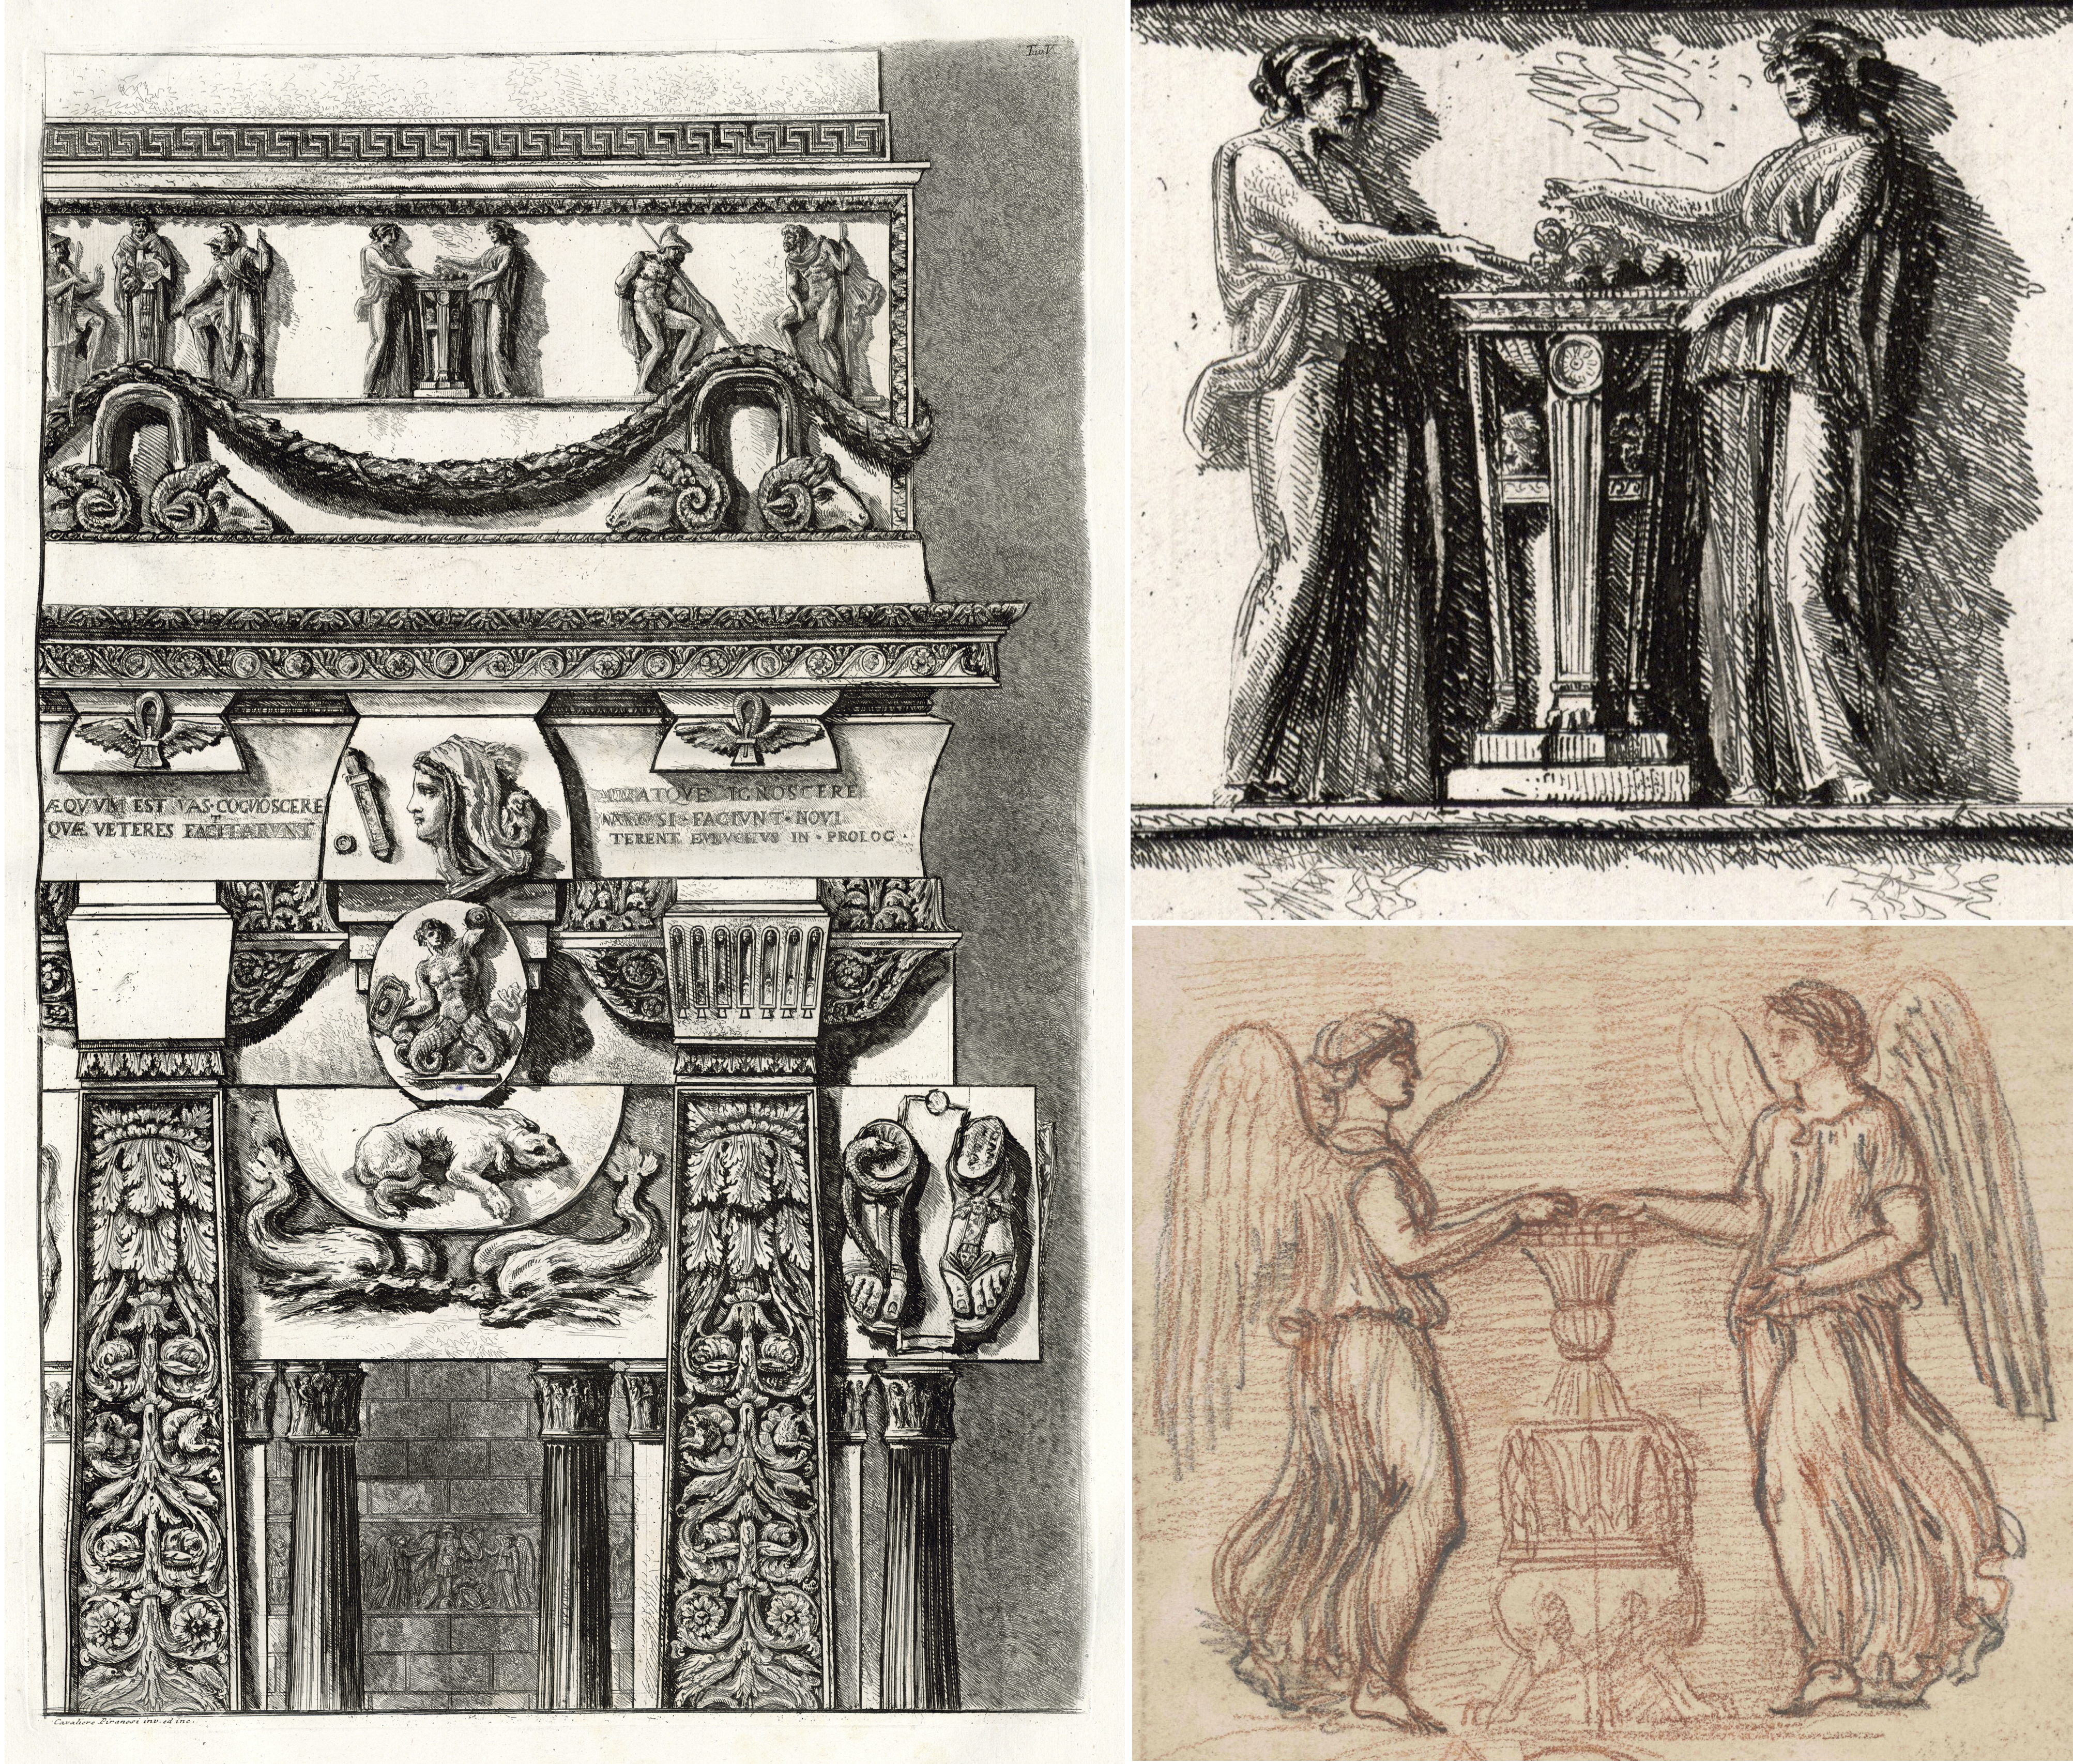 Vergleich von Piranesi-Zeichnungen mit Architekturelementen